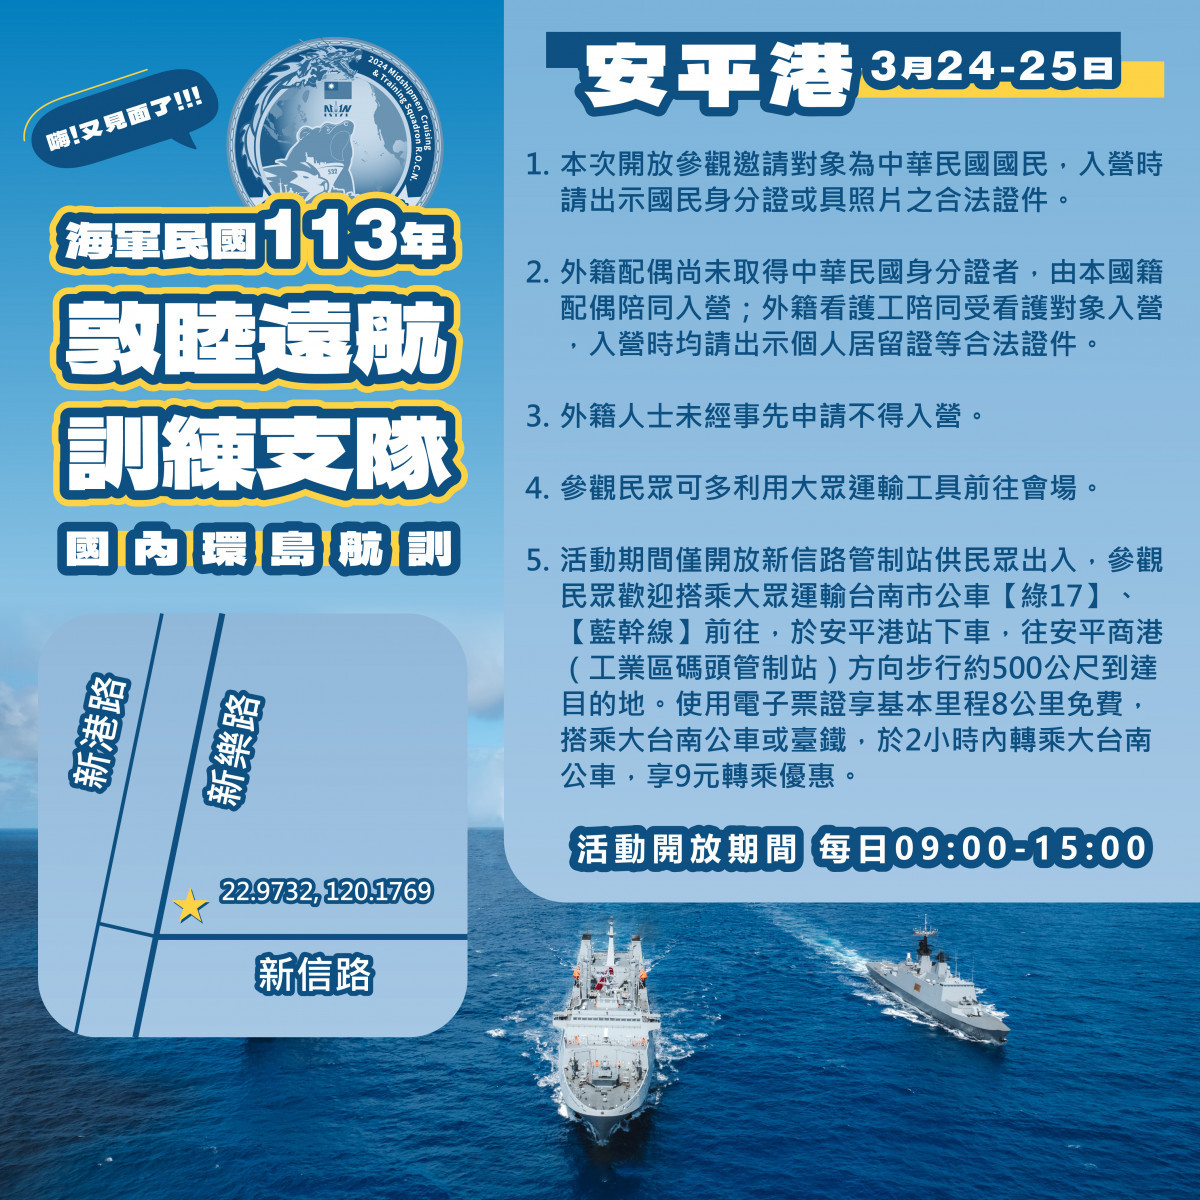 海軍敦睦艦隊又來了　3/ 24、25開放登艦參觀